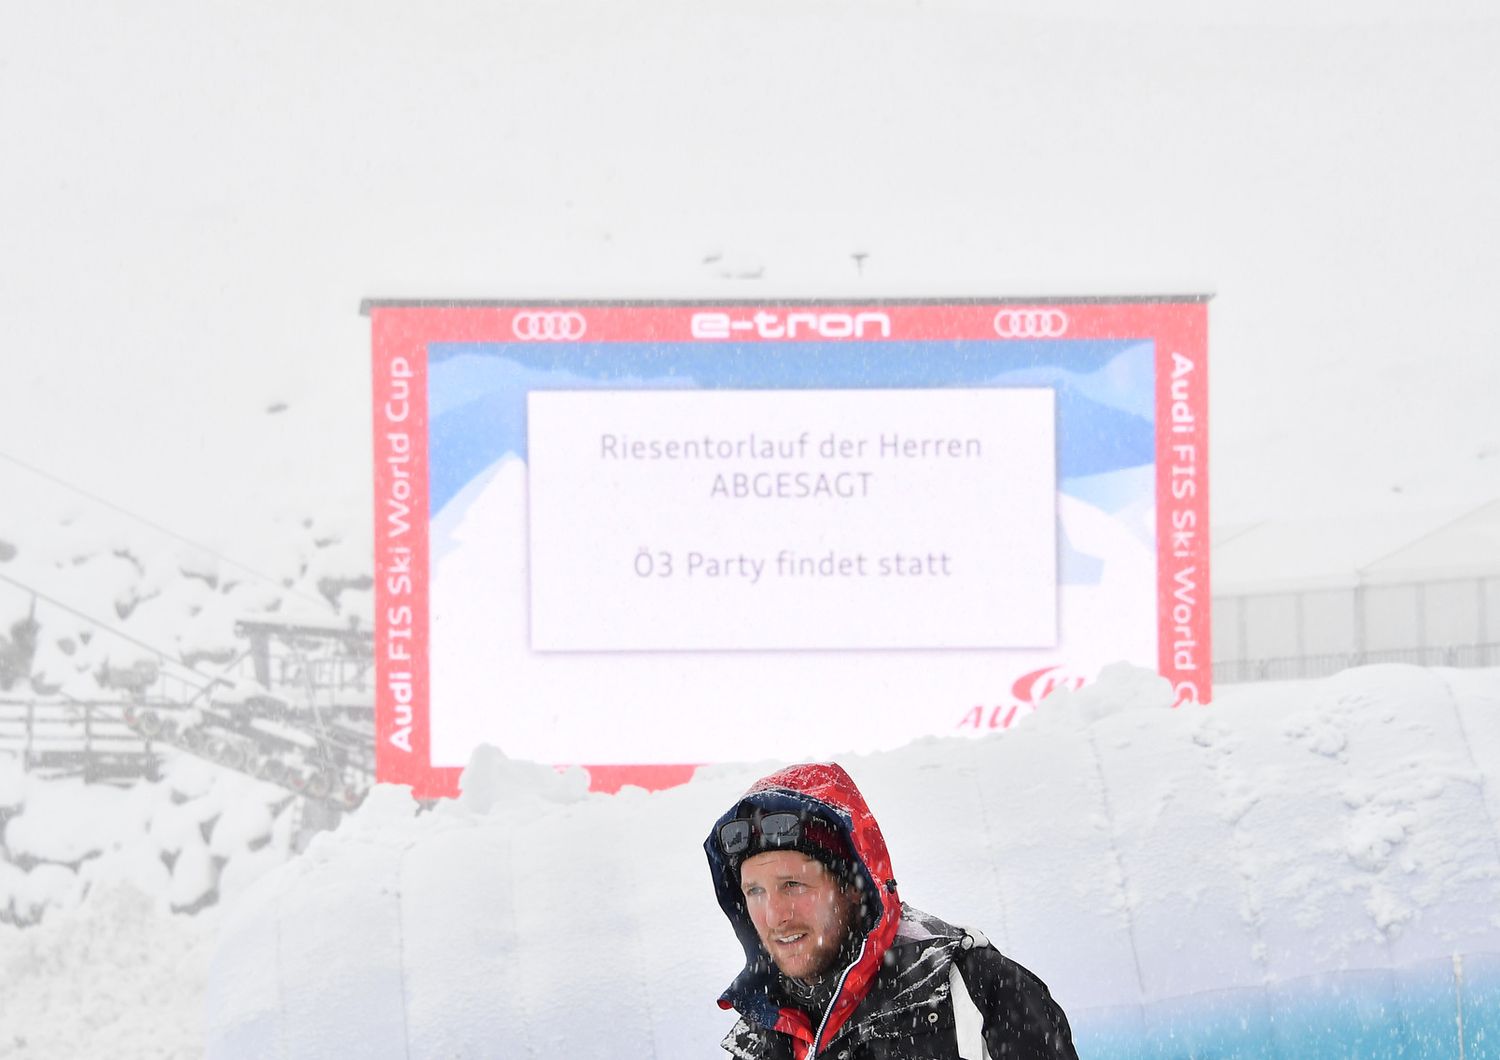 Maltempo annullato slalom gigante maschile sci Austria